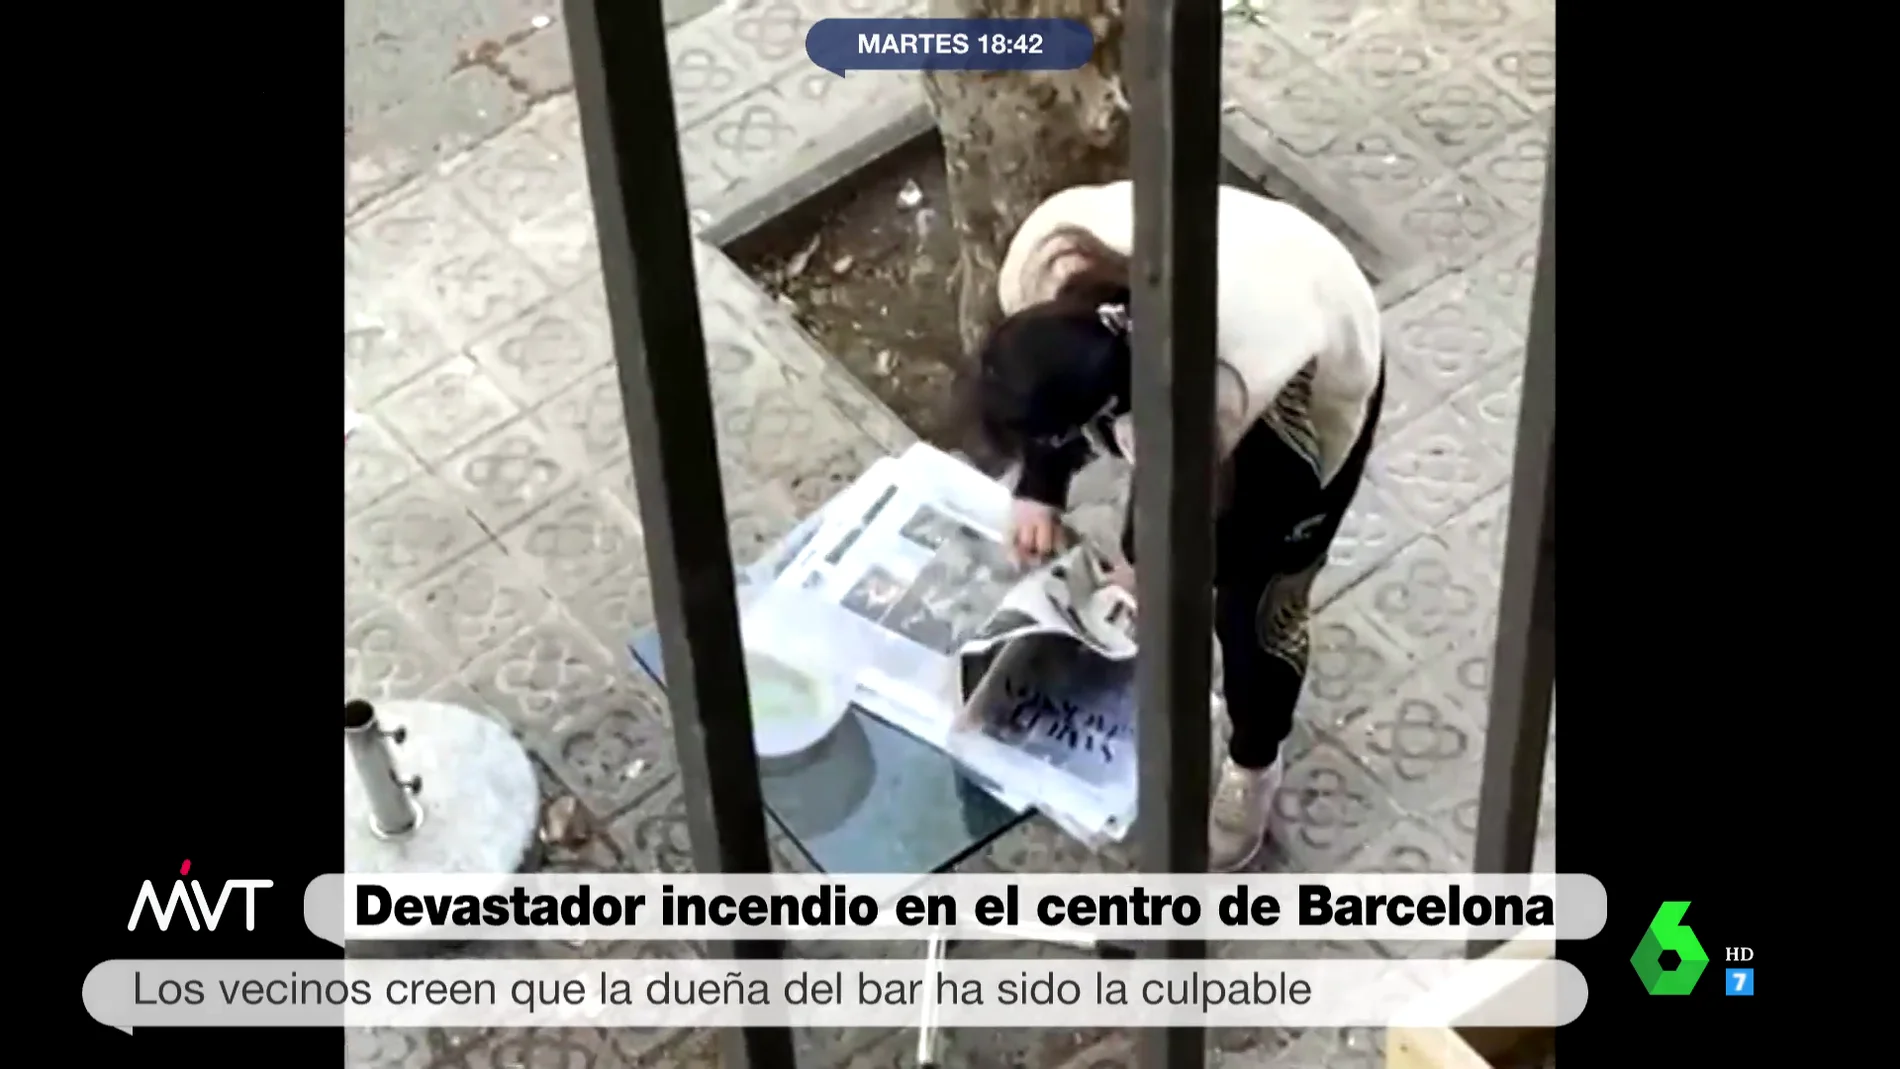 Así actuó la dueña del local incendiado en Barcelona los días previos de la explosión: "Lo haré antes de que me eches"